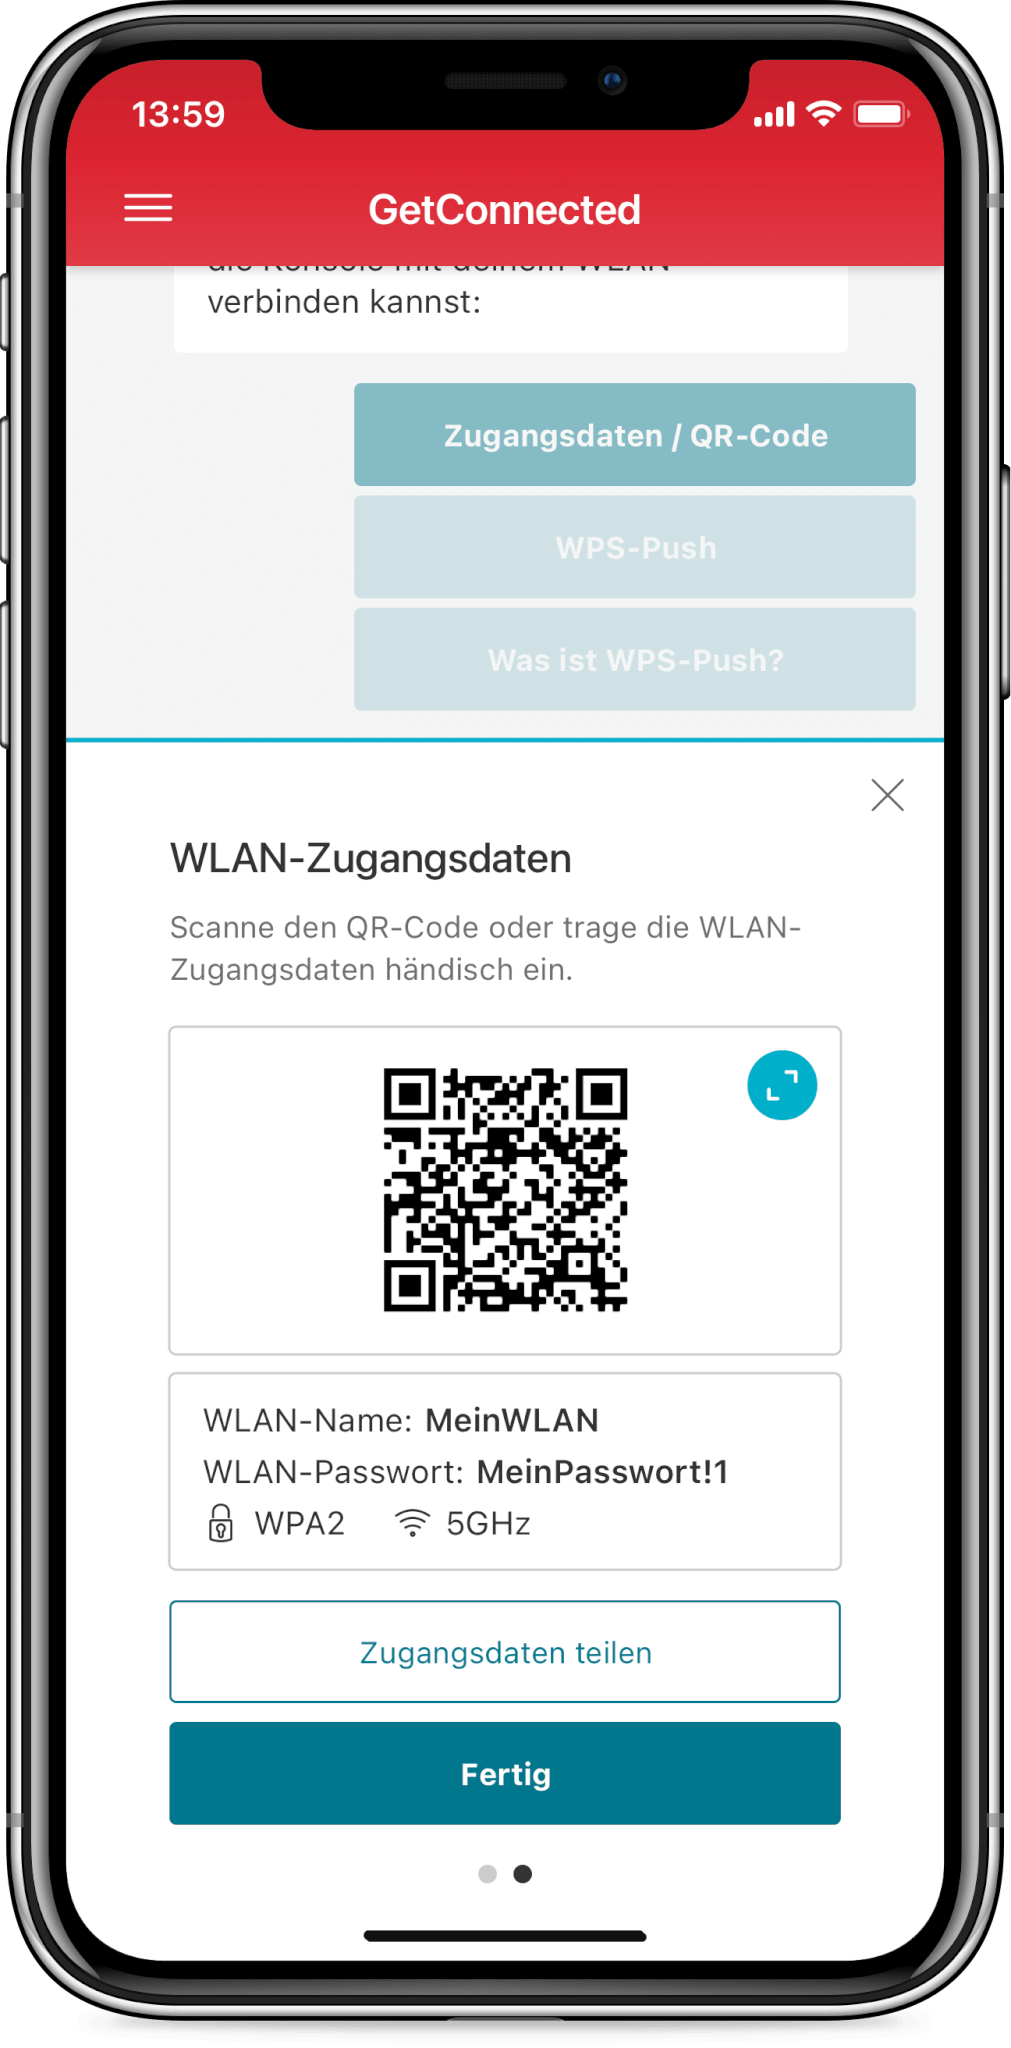 Get Connected App Szenario WLAN Zugangsdaten teilen